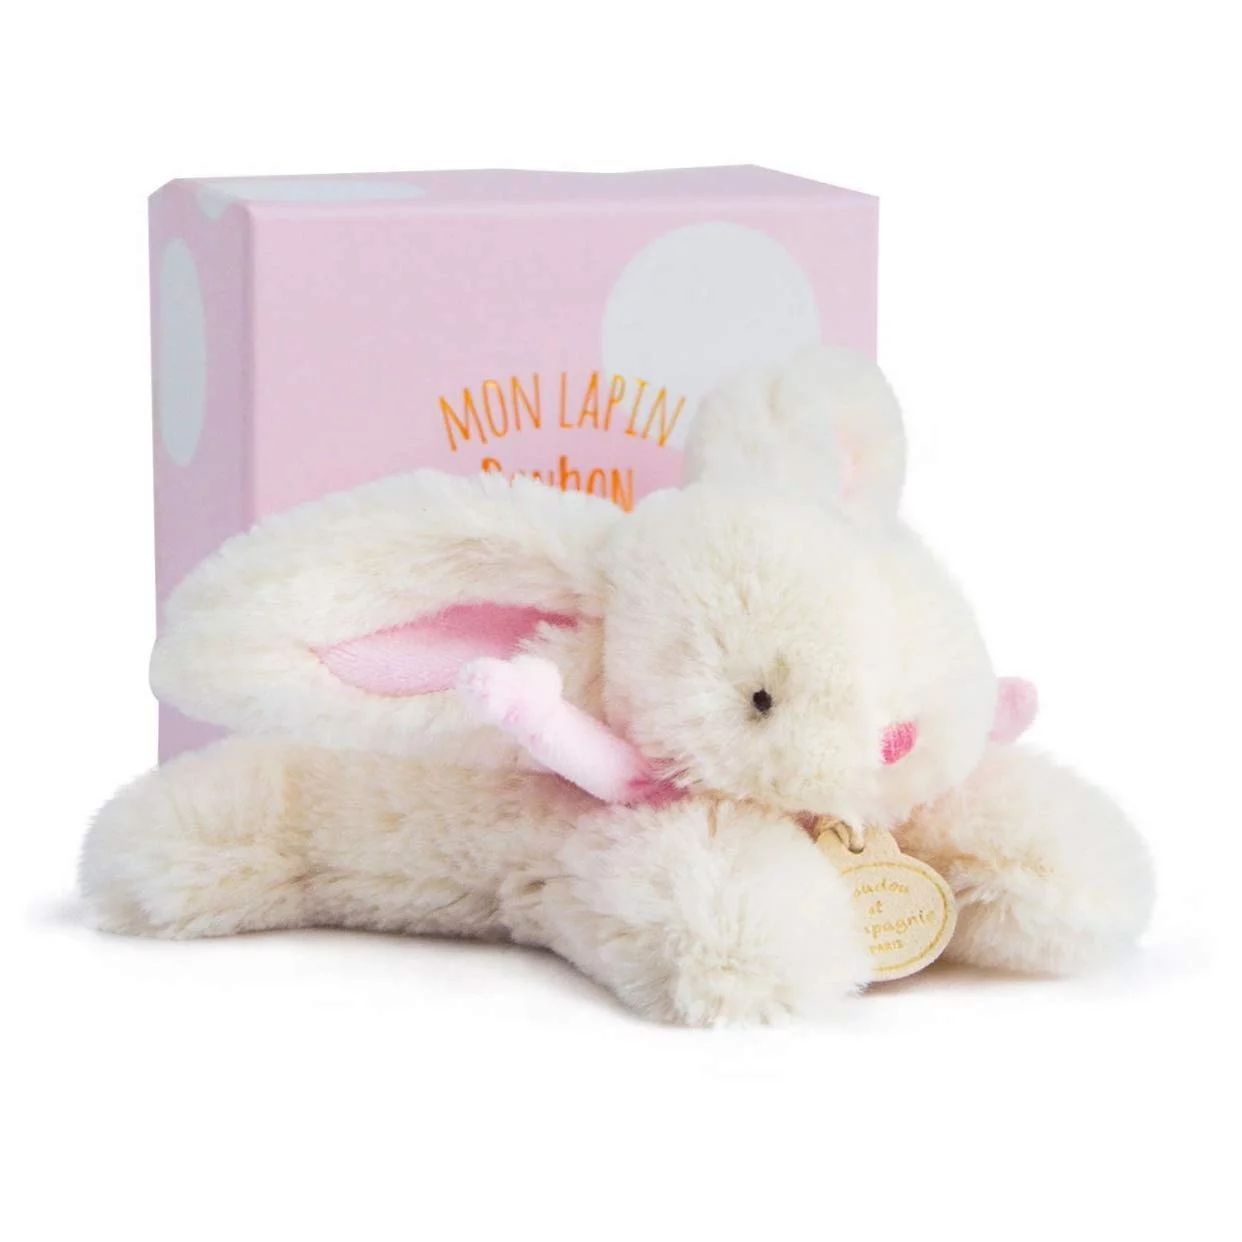 Doudou et Compagnie Rabbit Soft Toy 16 cm Pink | Walmart (US)